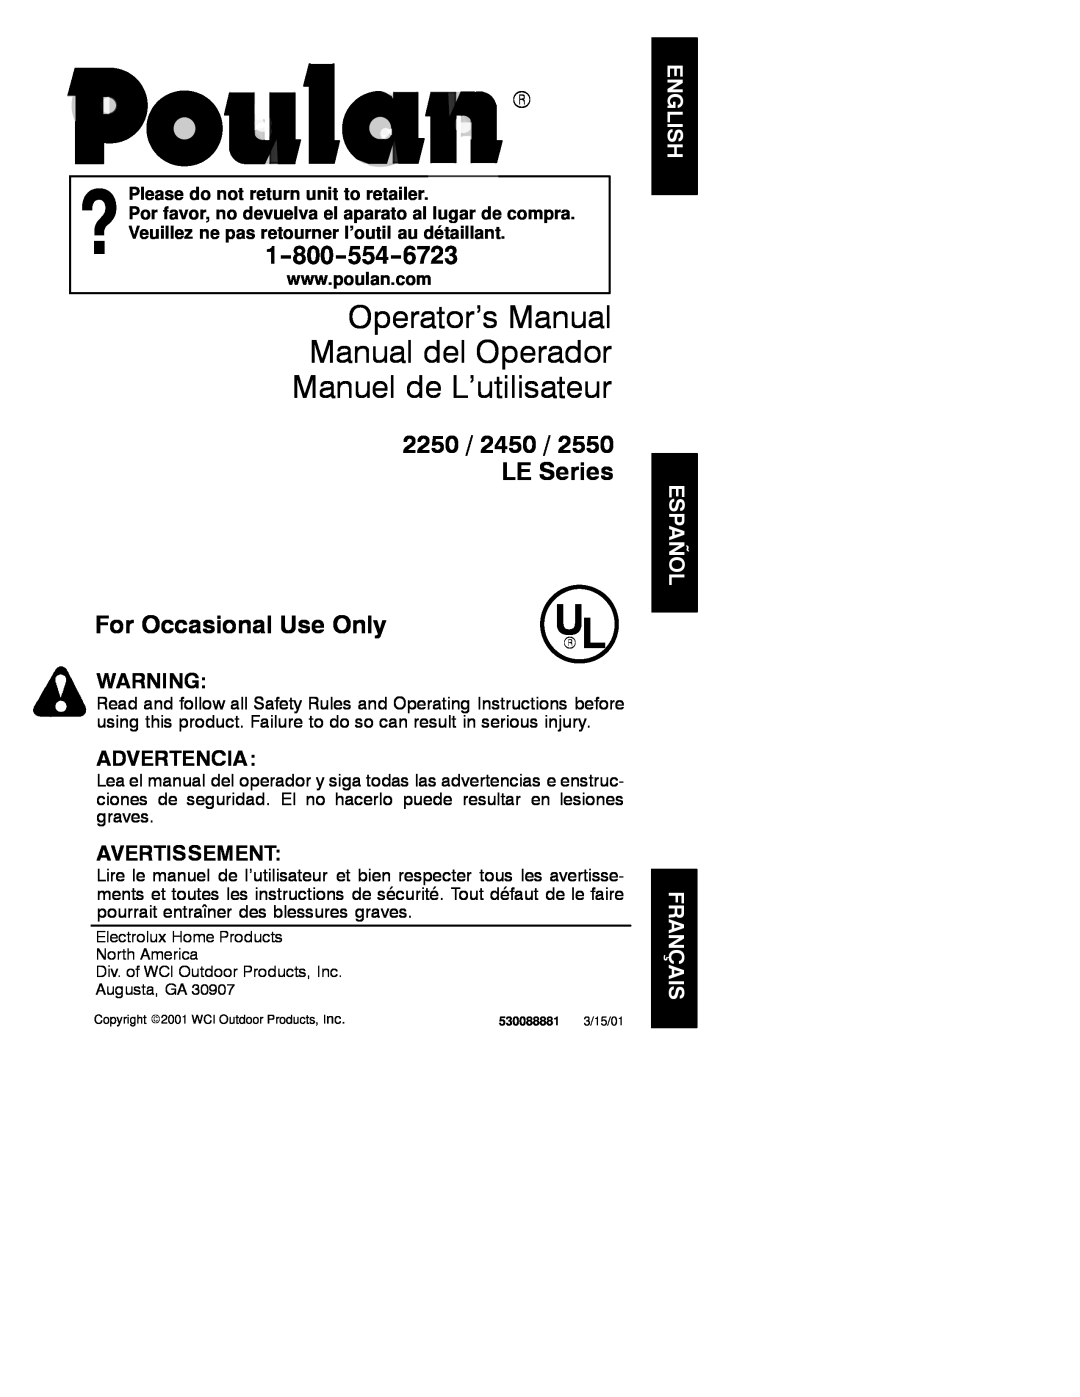 Poulan 2001-03 operating instructions Operator’s Manual Manual del Operador Manuel de L’utilisateur, Advertencia 